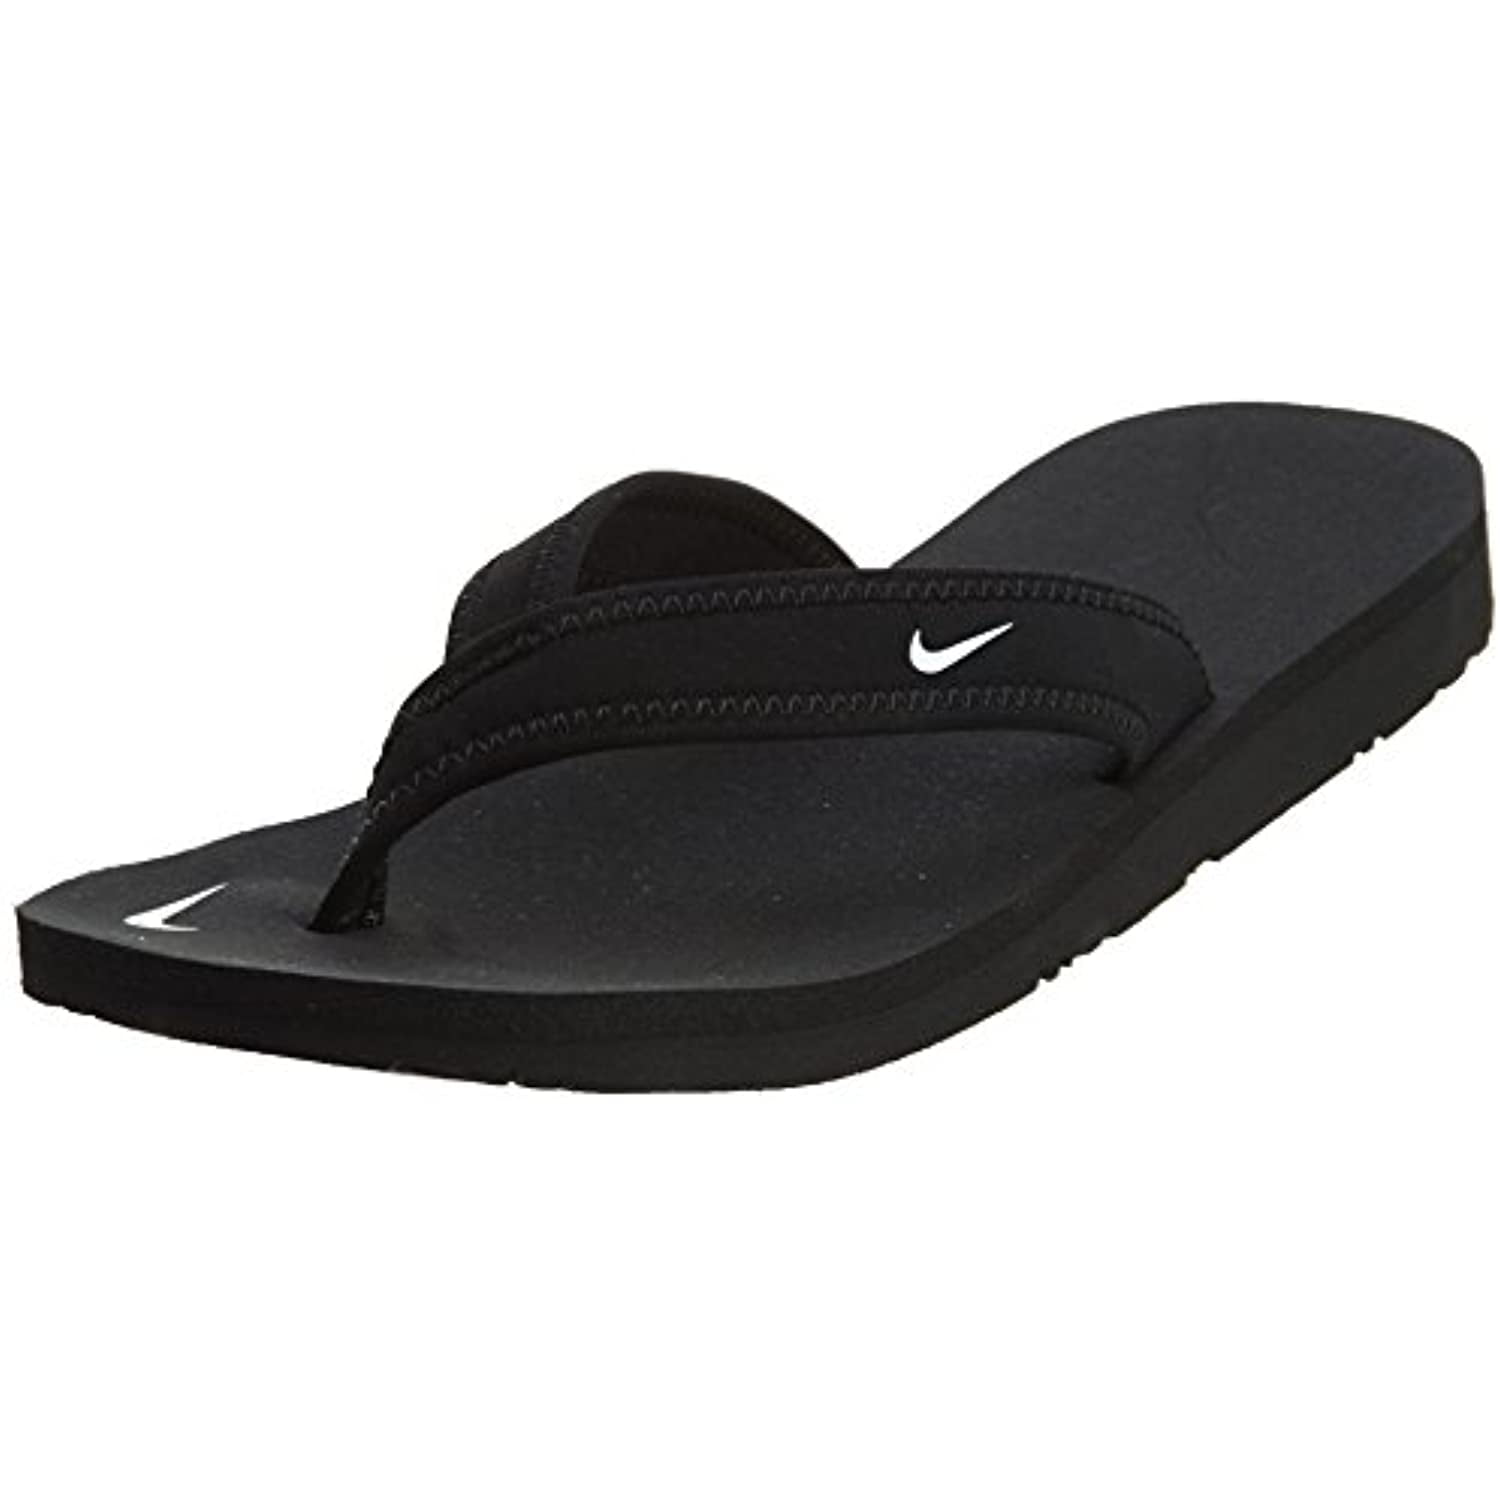 Thong Sandal 314870-011 Size 10 Black/White Walmart.com